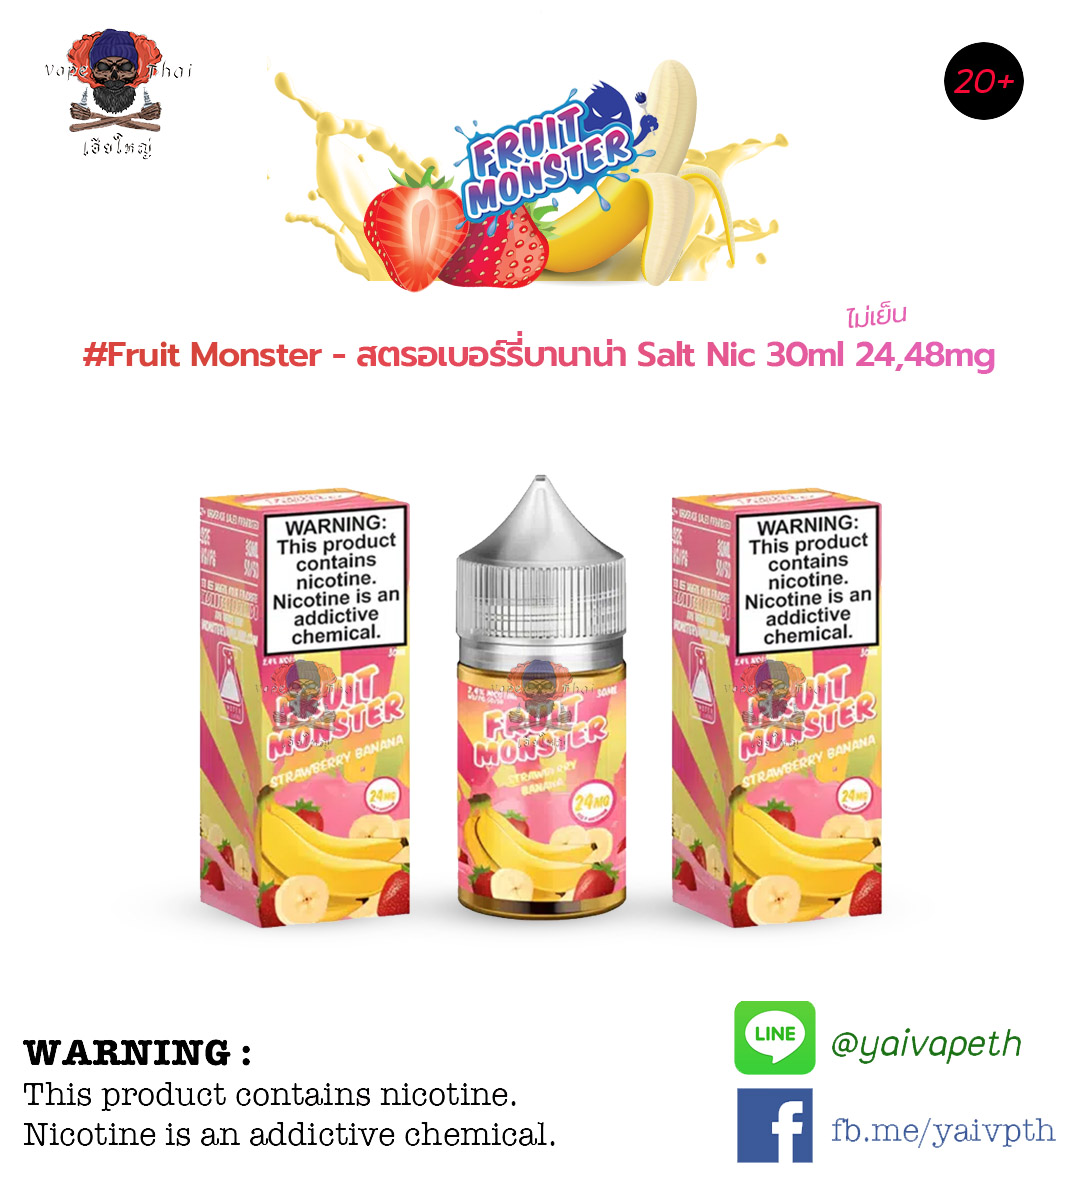 สตรอเบอร์รี่บานาน่า – น้ำยาบุหรี่ไฟฟ้า Fruit Monster Strawberry Banana Salt Nic 30ml (U.S.A.) [ไม่เย็น] ของแท้ 100%